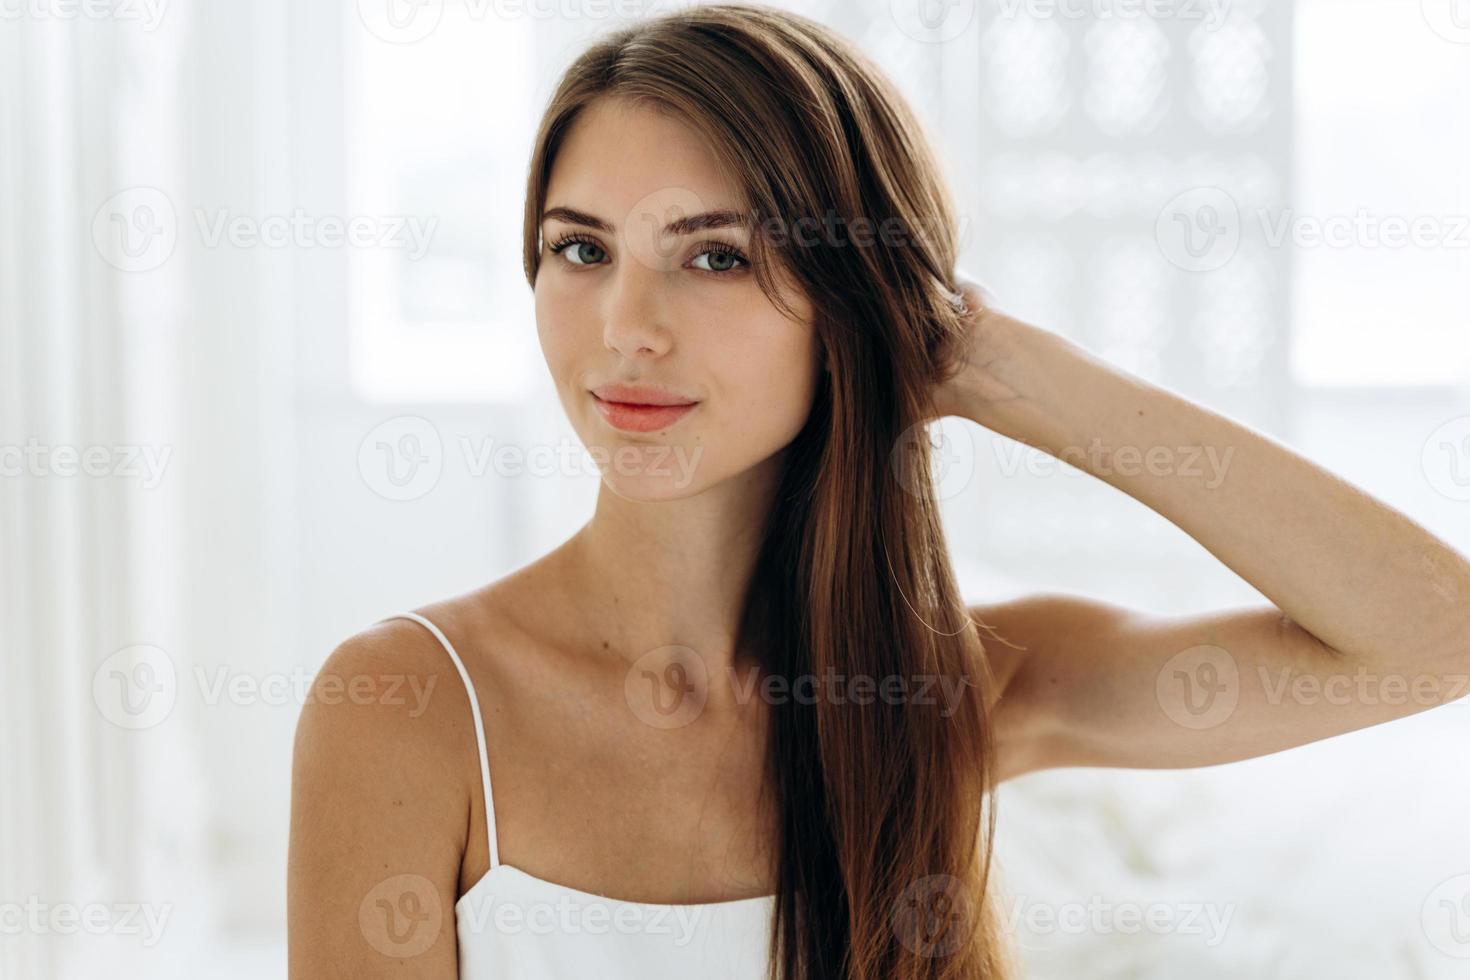 thuisportret van een schattige bruinharige vrouw met een gezonde huid die met kalme uitdrukking voor de camera zit terwijl ze de ochtend doorbrengt in haar appartementen. schoonheid en vrouw uiterlijk concept foto